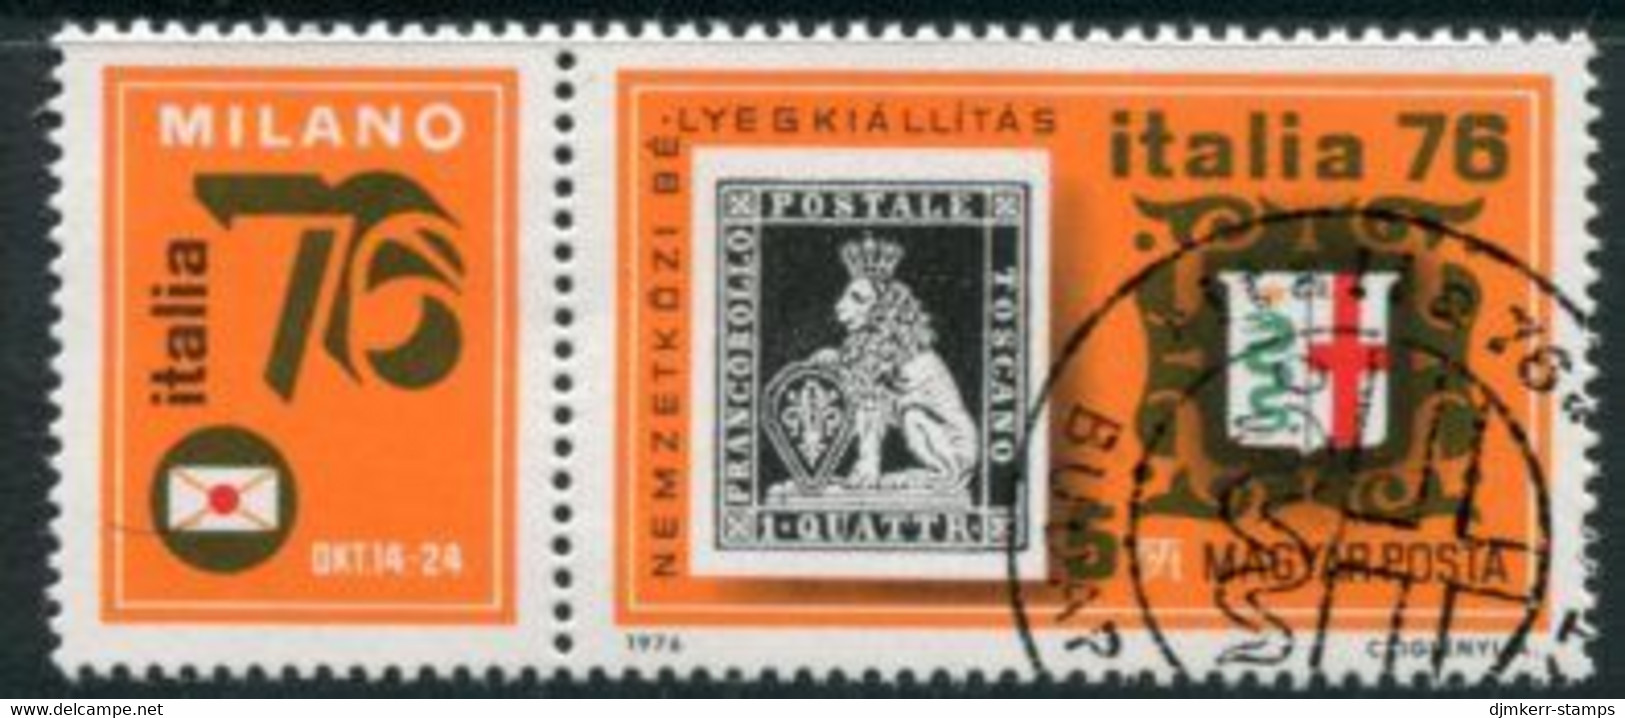 HUNGARY 1976 ITALIA Stamp Exhibition  Used.  Michel 3143 - Gebruikt